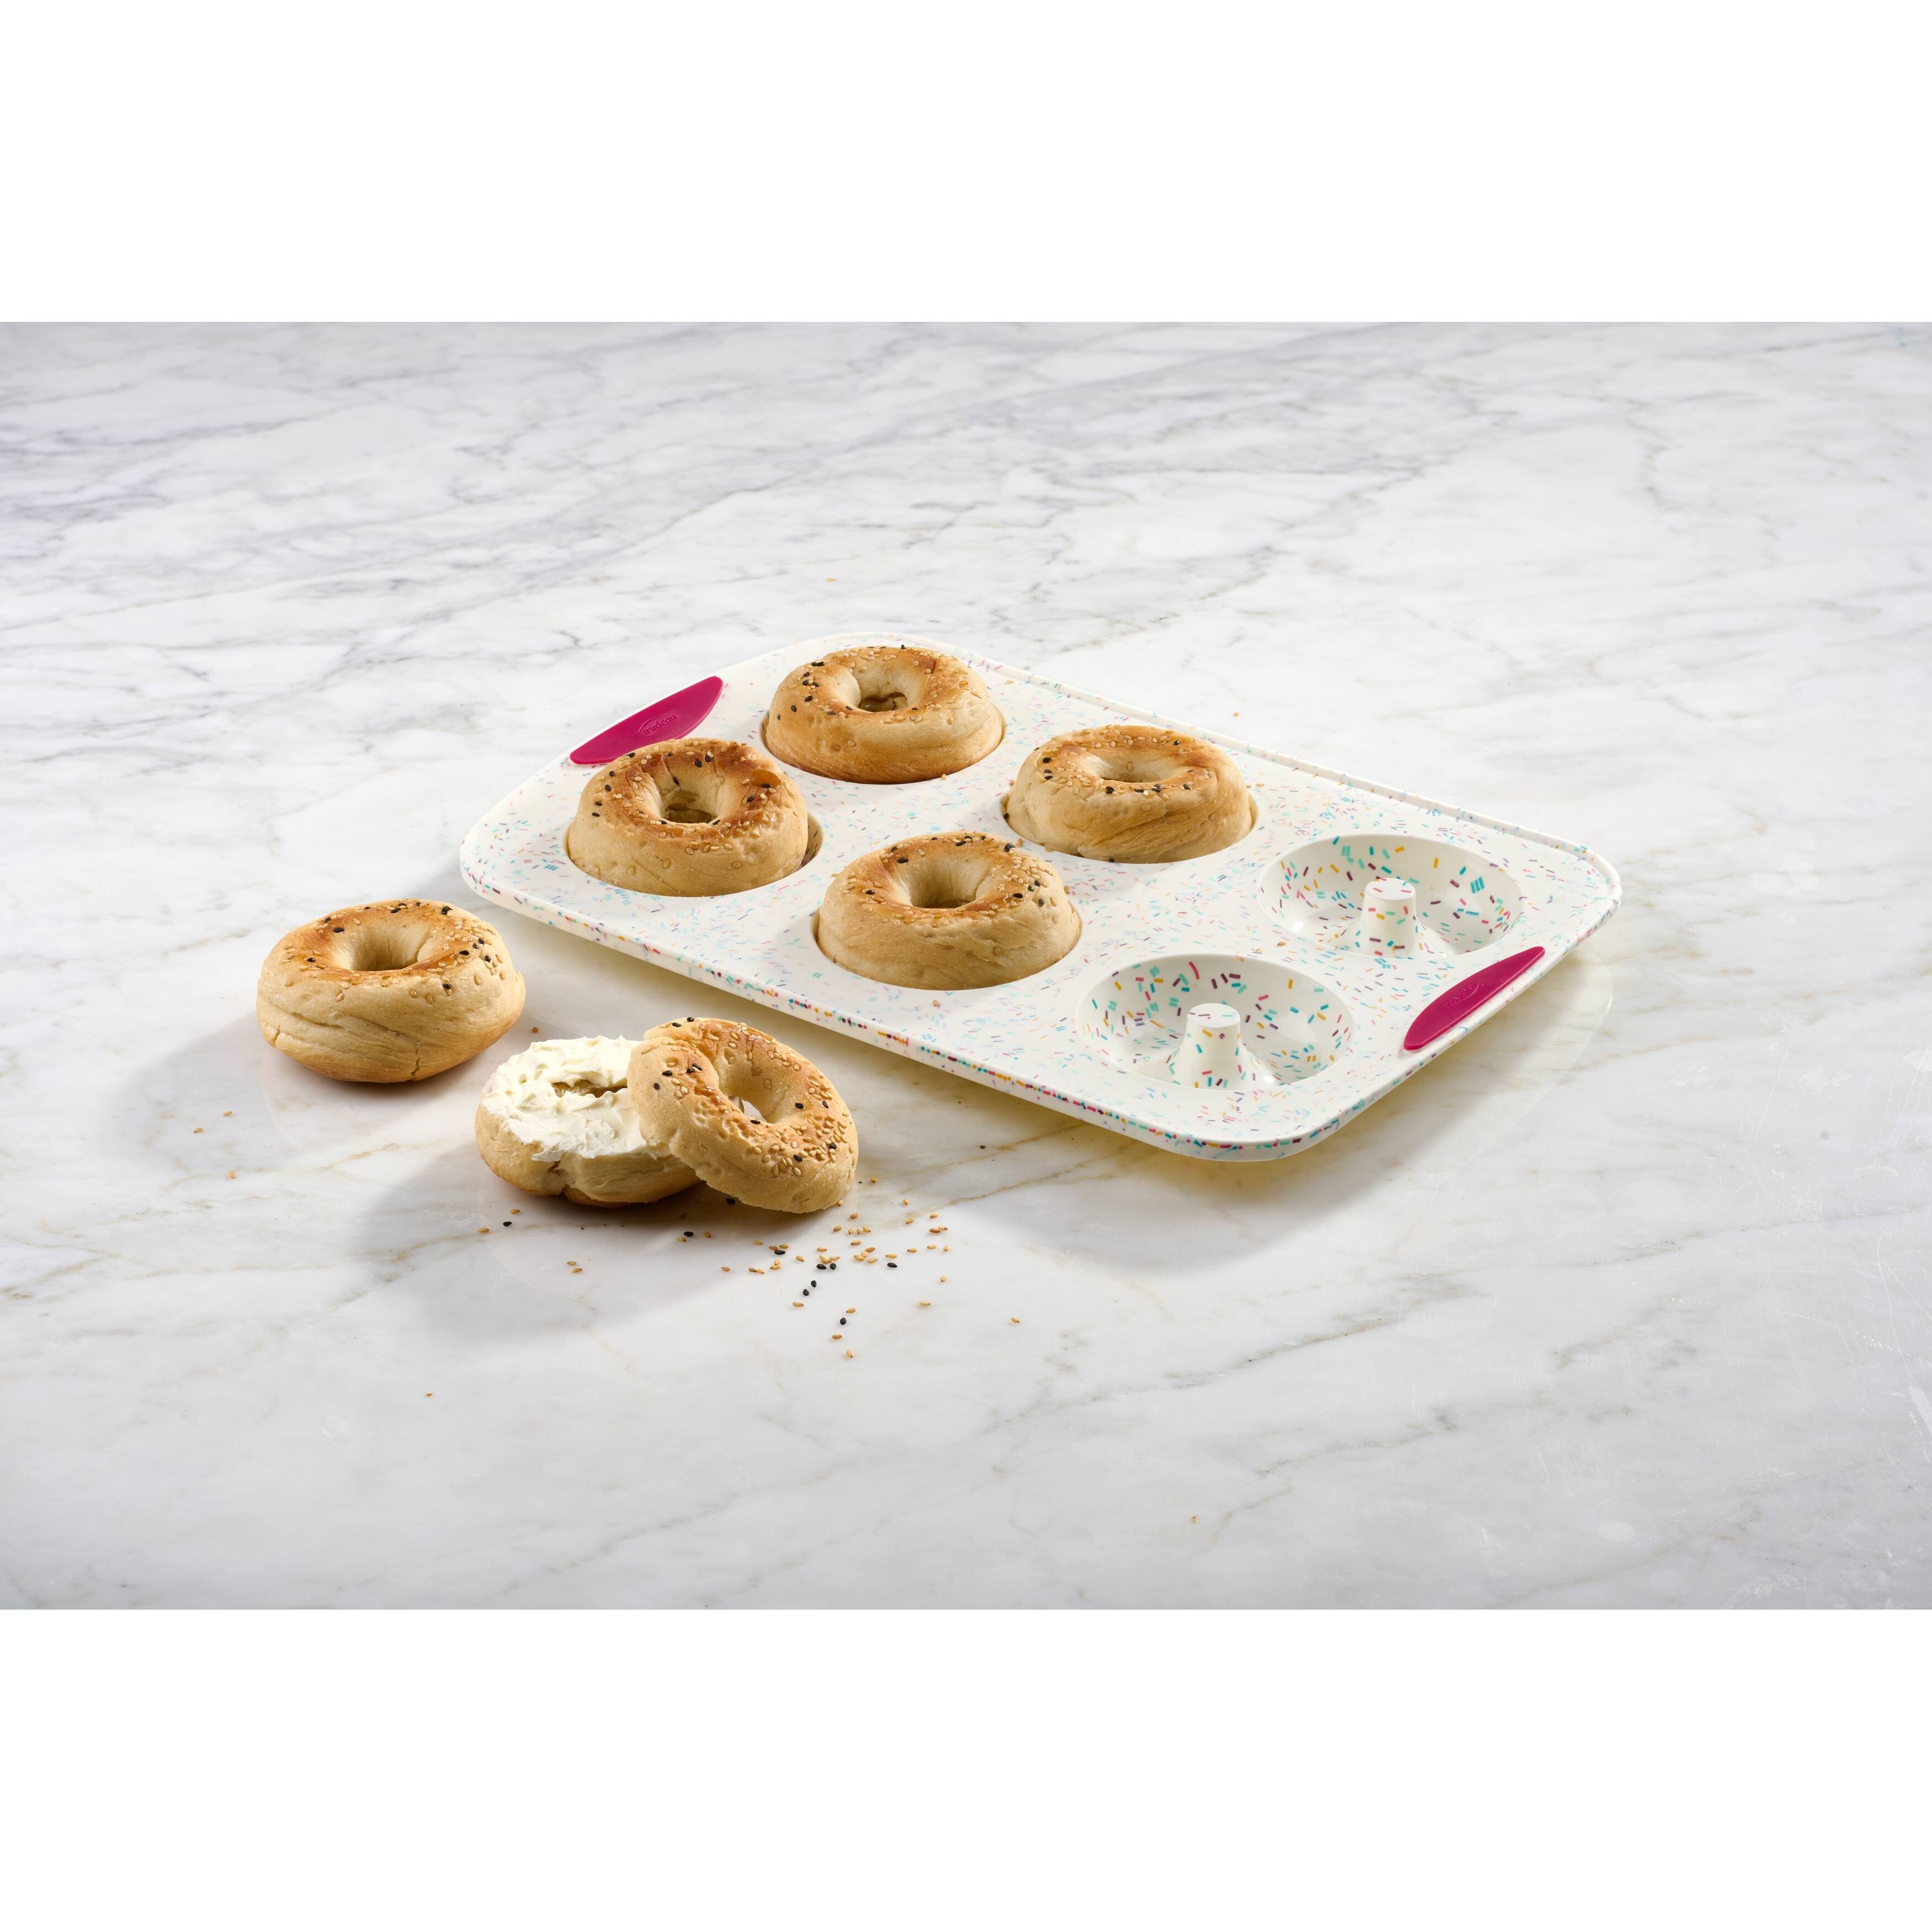 White Confetti Silicone 6-Count Jumbo Donut Pan, Trudeau